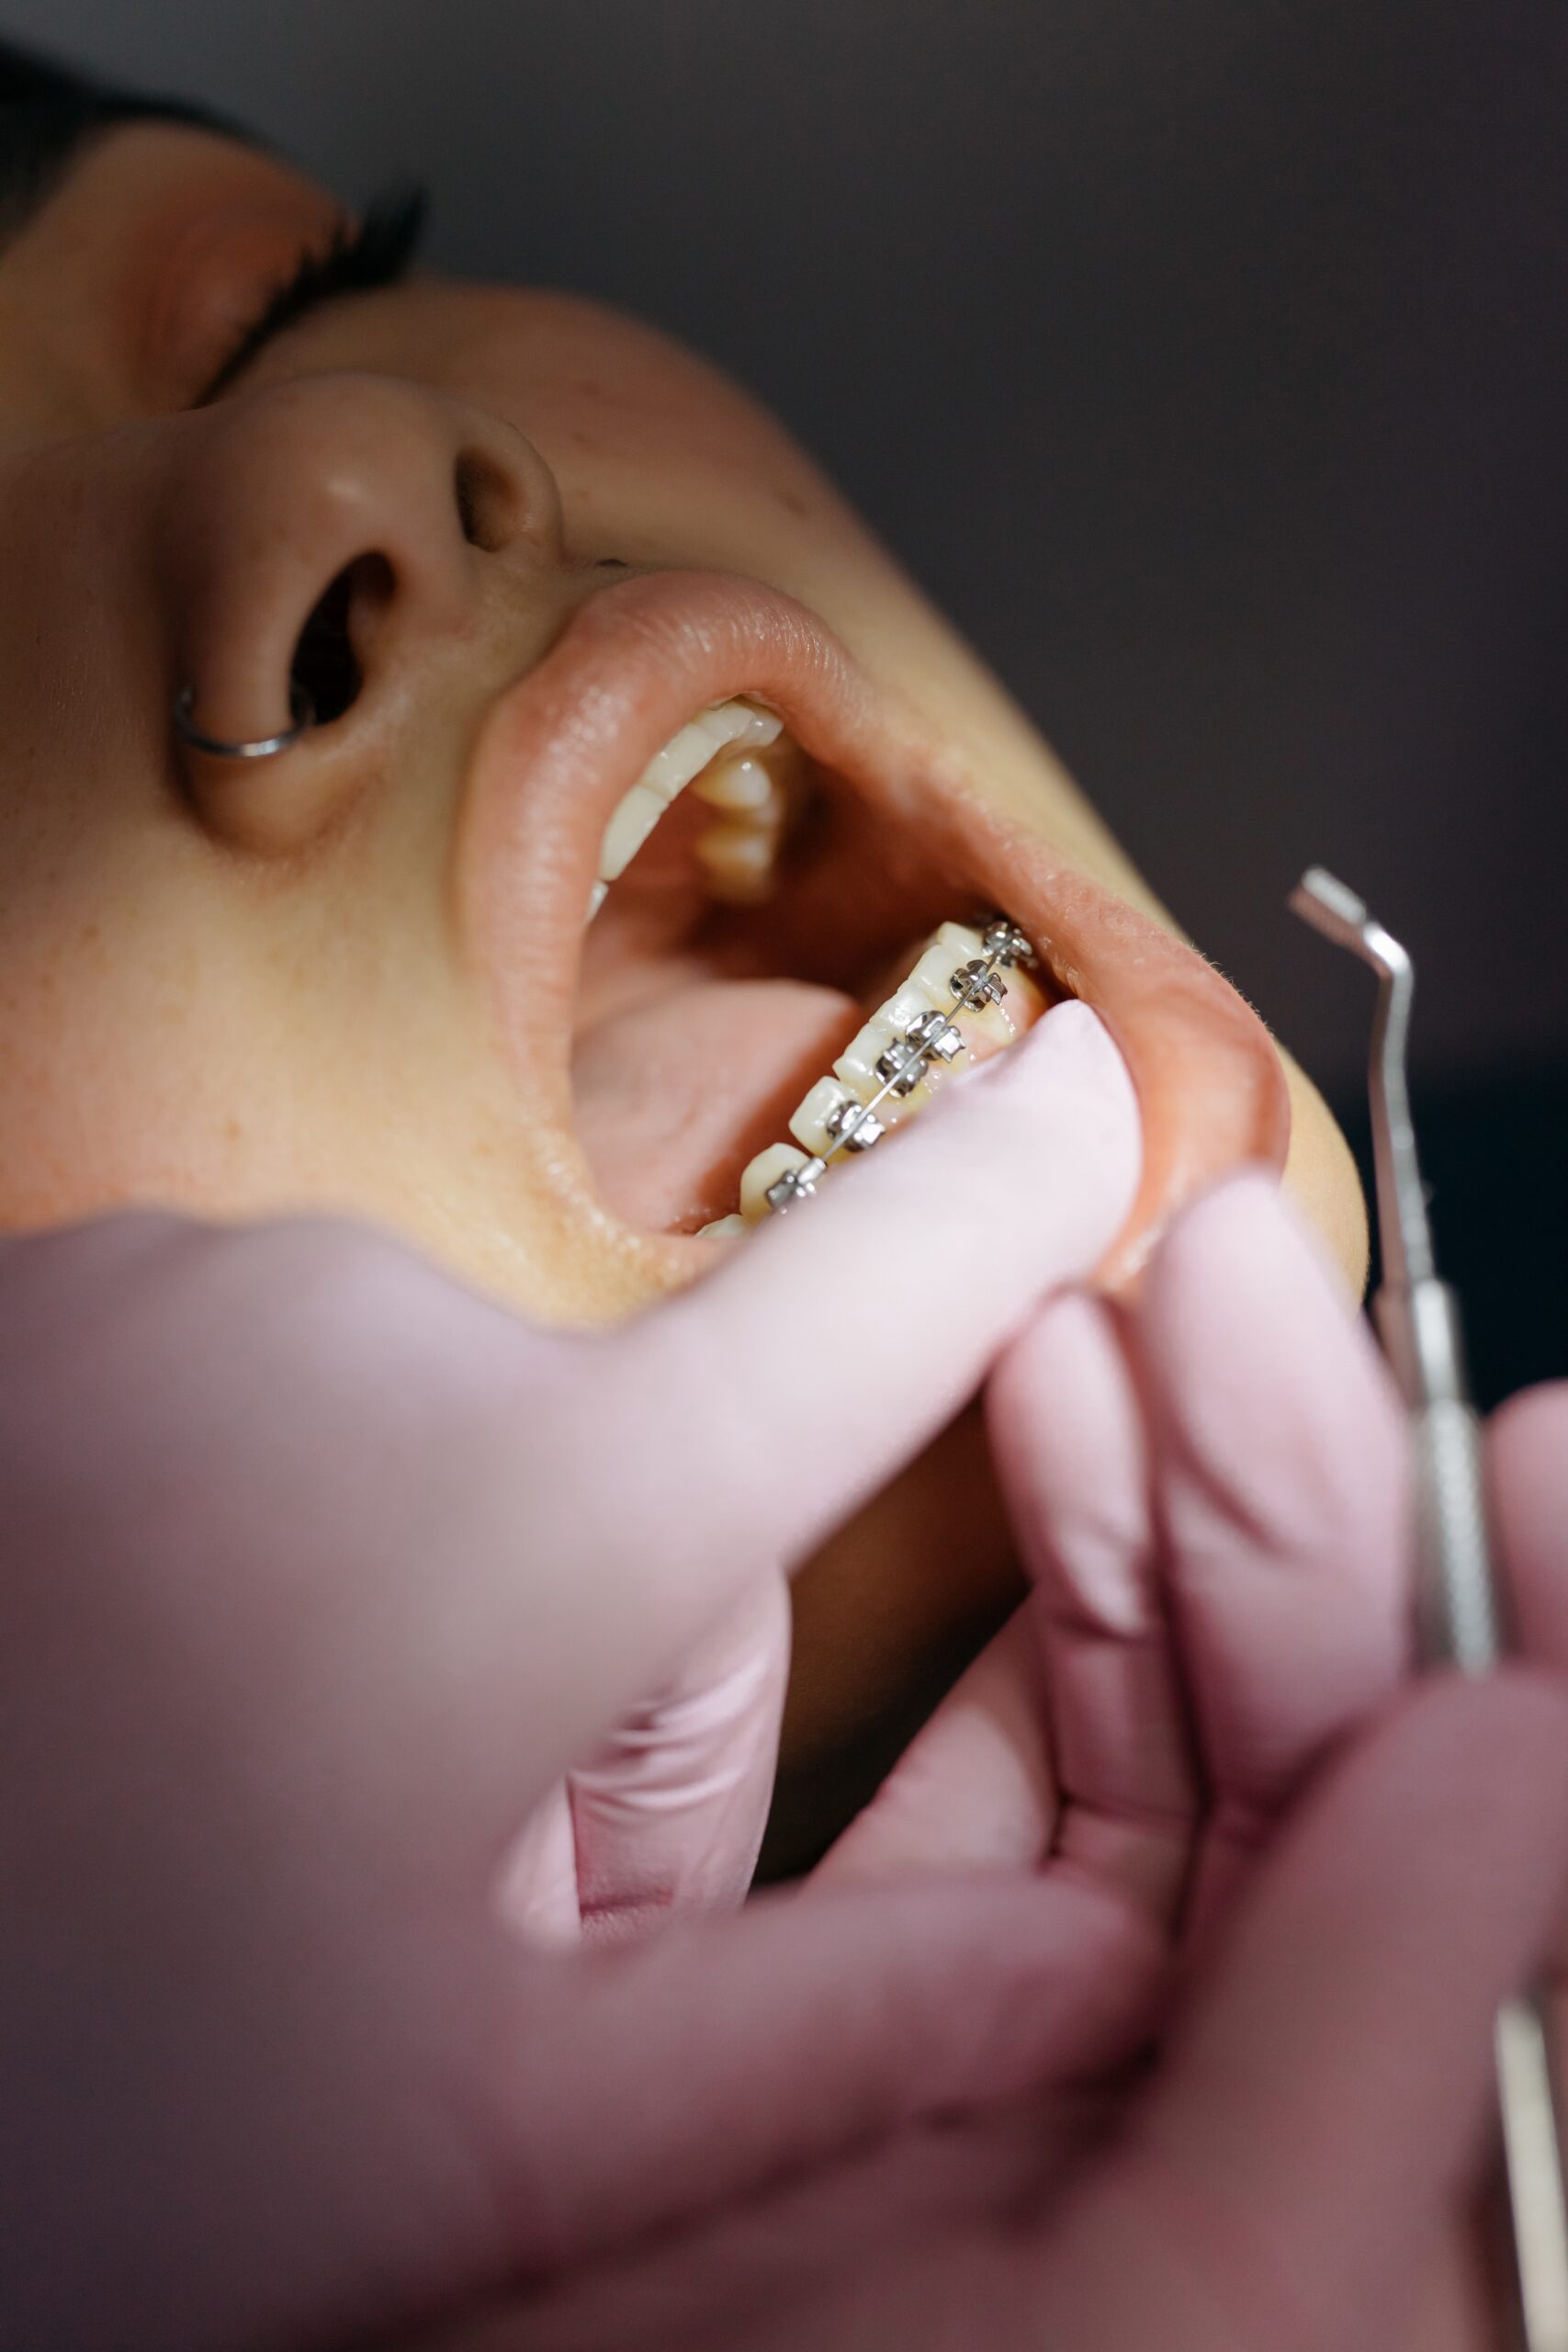 Adult-orthodontic-treatment